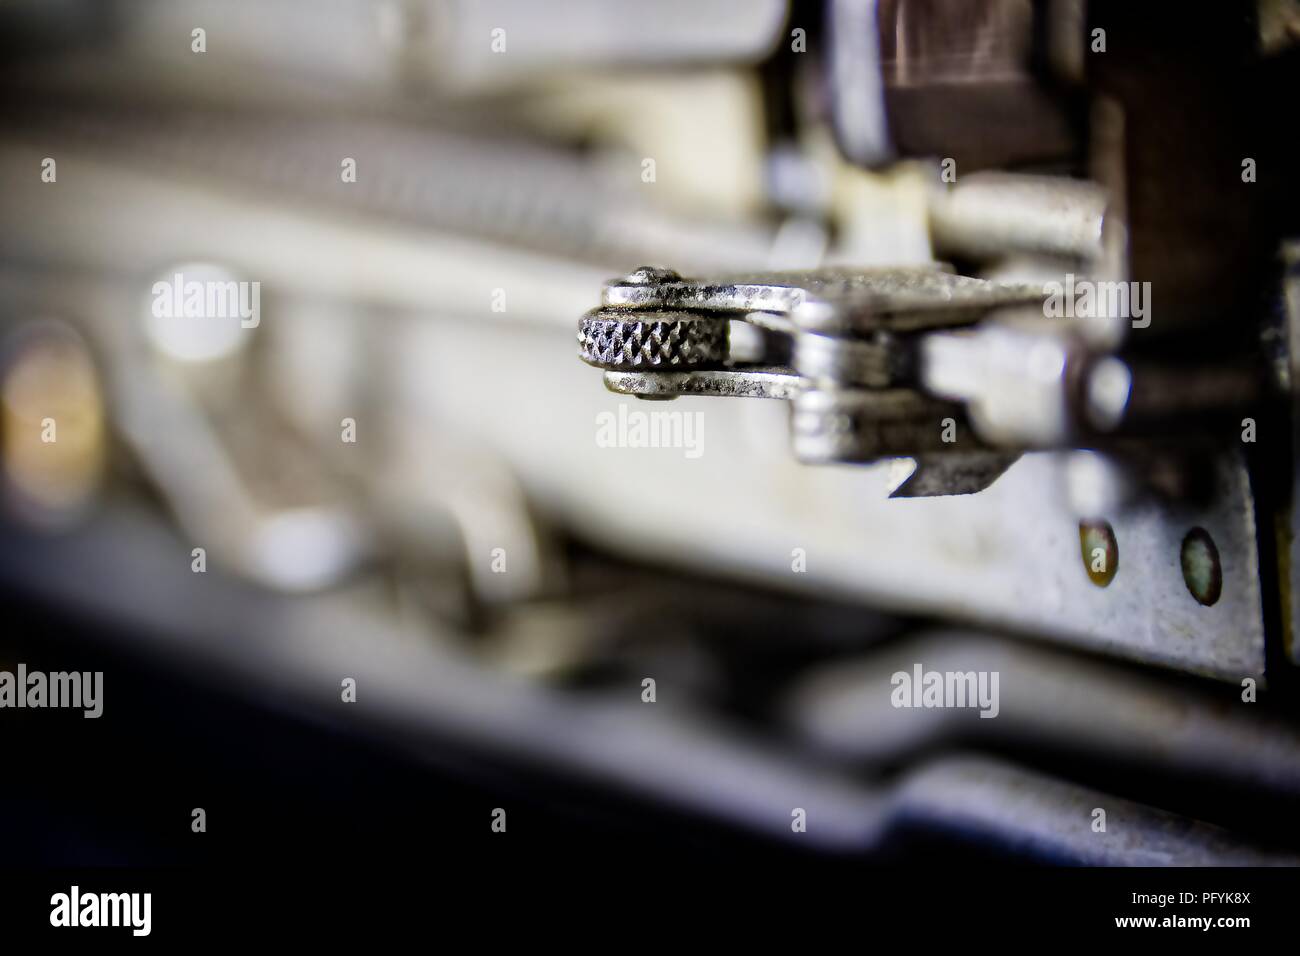 Orientata fino; fotografia che mostra un meccanismo di ingranaggi su un 1923 Nastri inchiostratori per macchine da scrivere con un bokeh sfondo. Lo strato di sottofondo adatto per affari e per uso industriale. Foto Stock